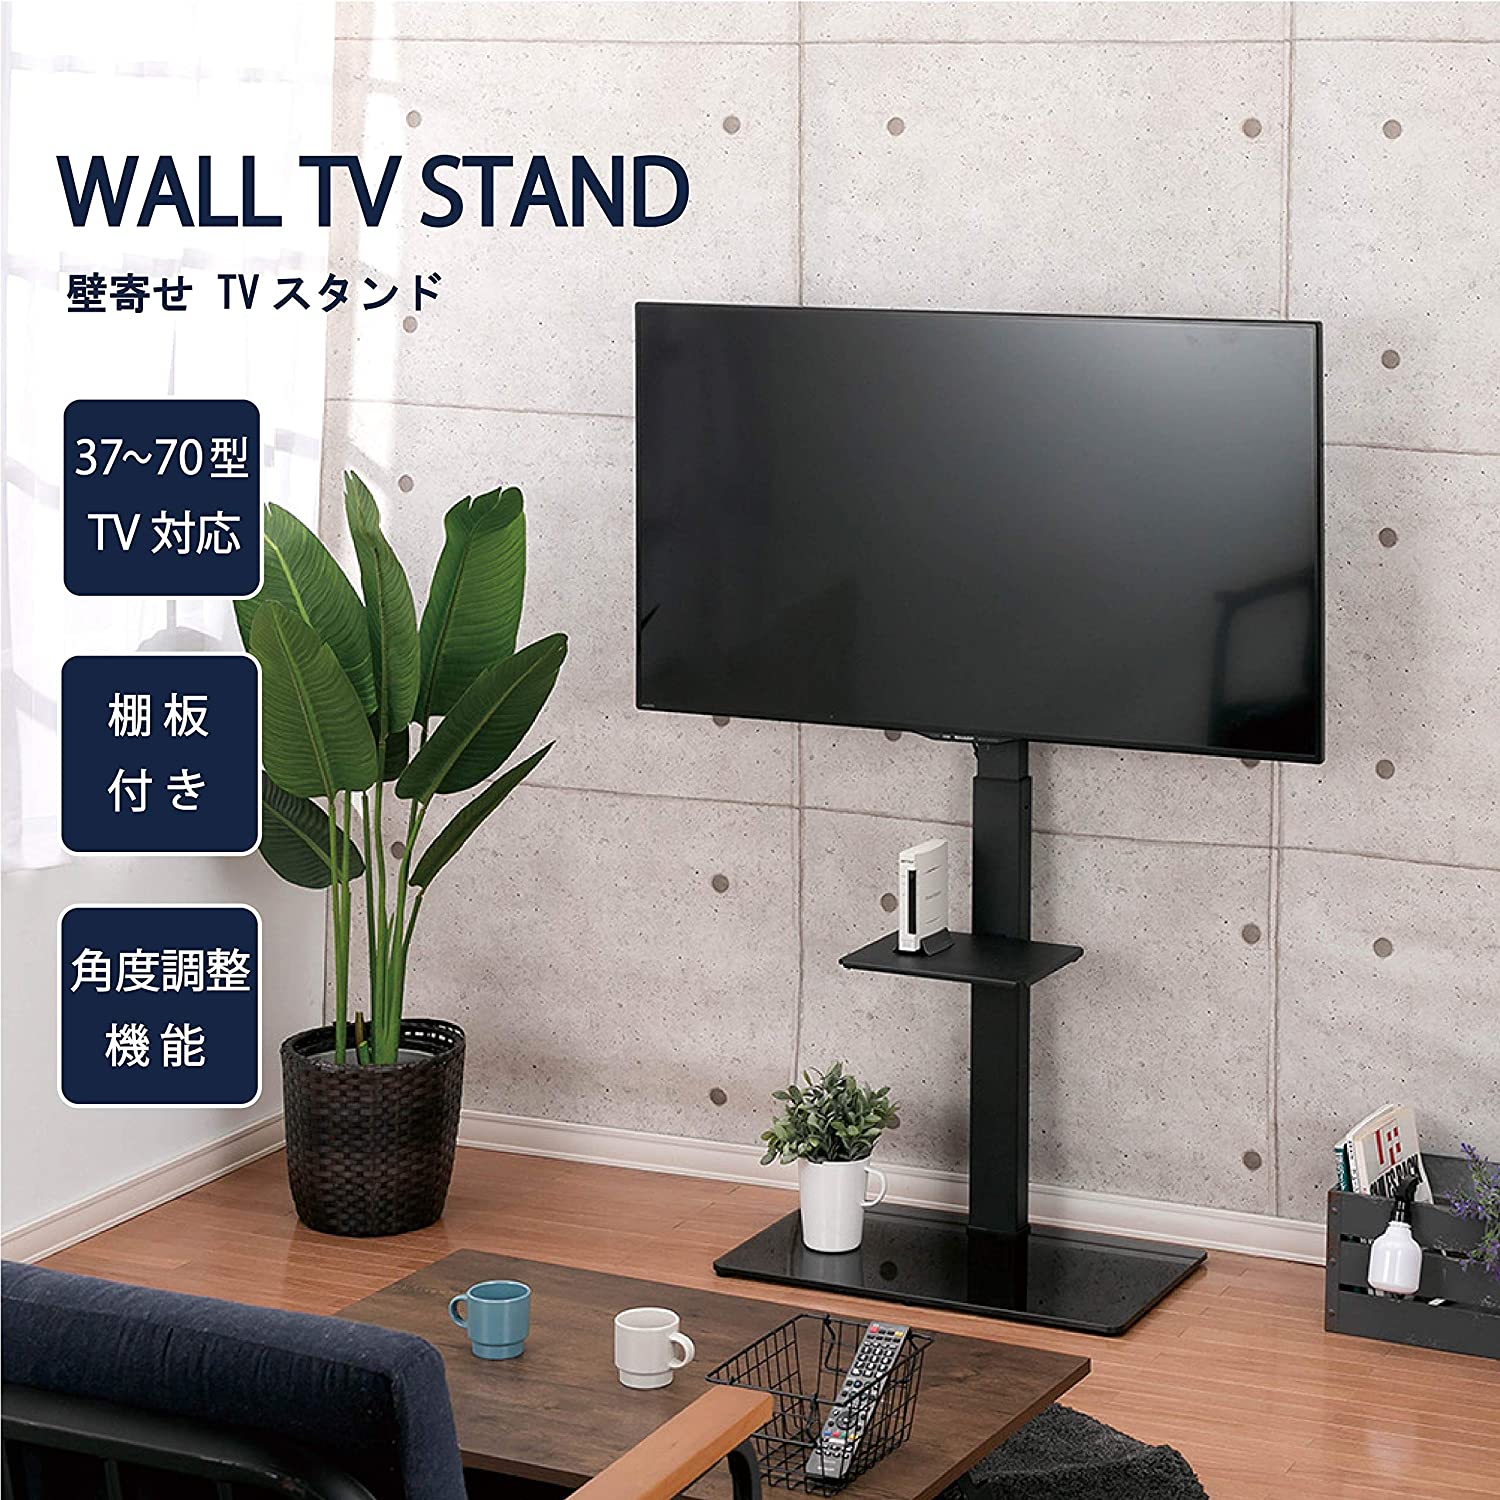 太郎さま専用WALL INTERIOR TVSTAND V3 HIGH TYPE | www.irai.co.id